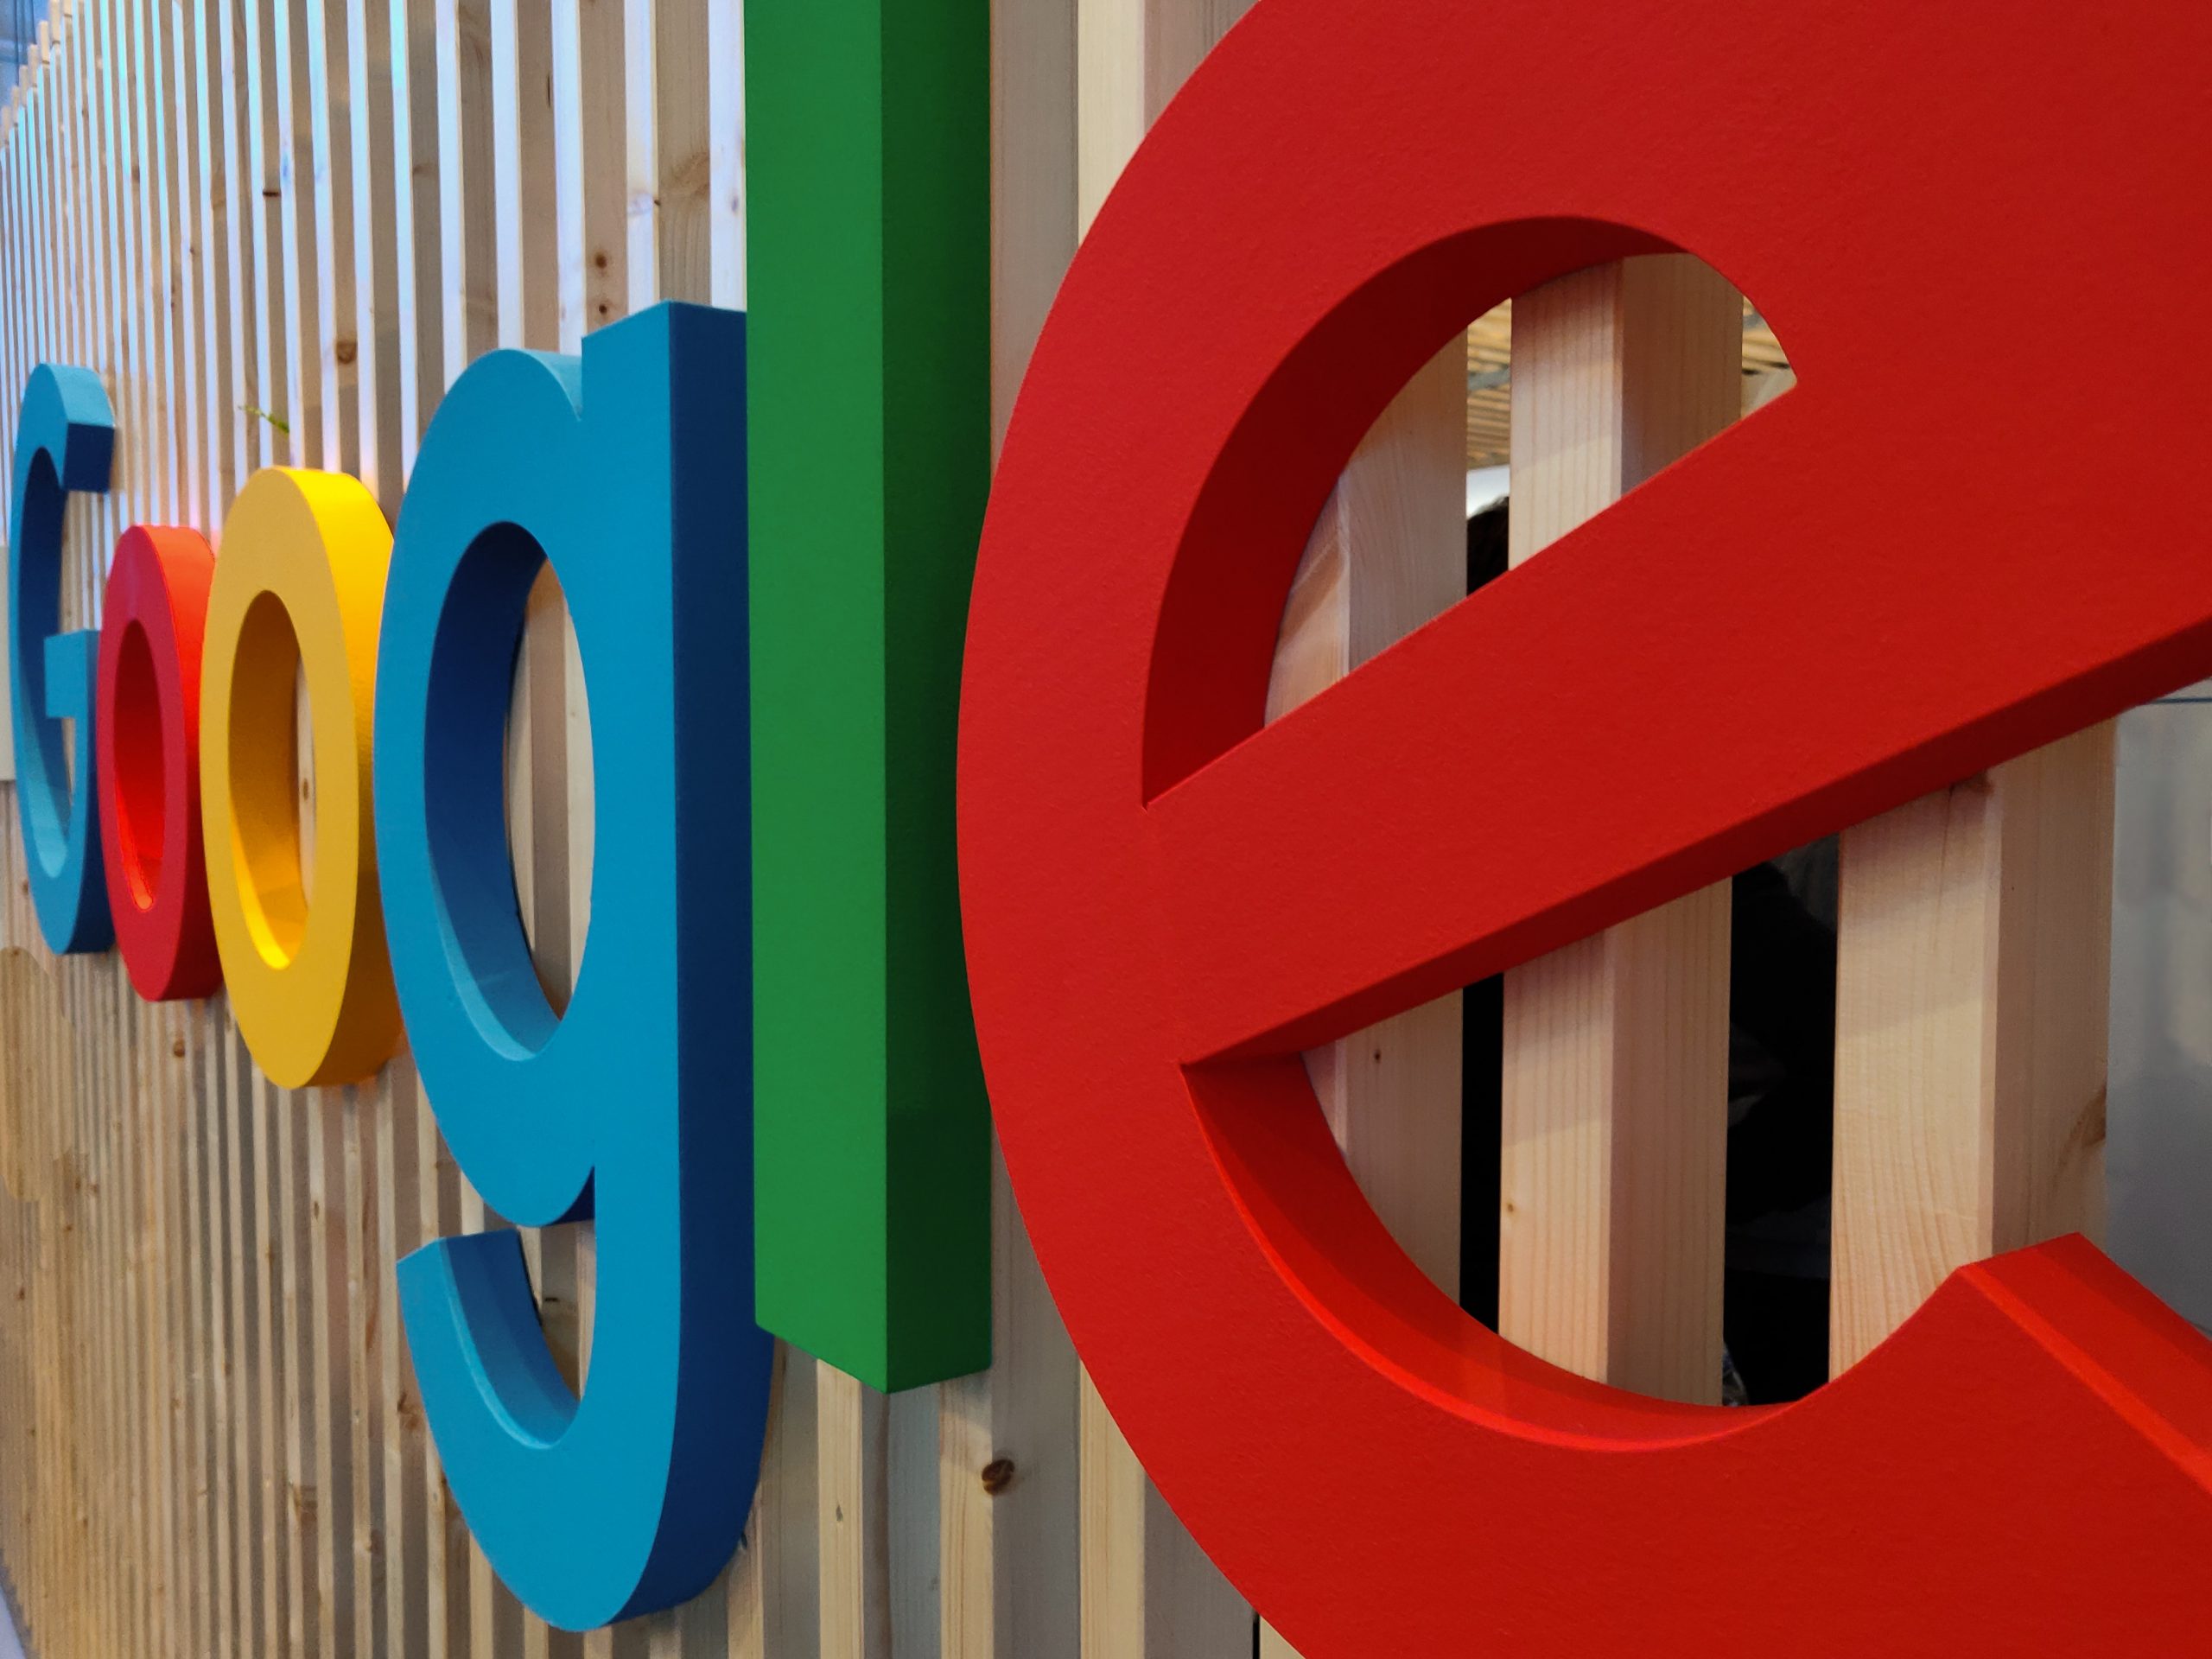 kasus hukum google pengembang aplikasi